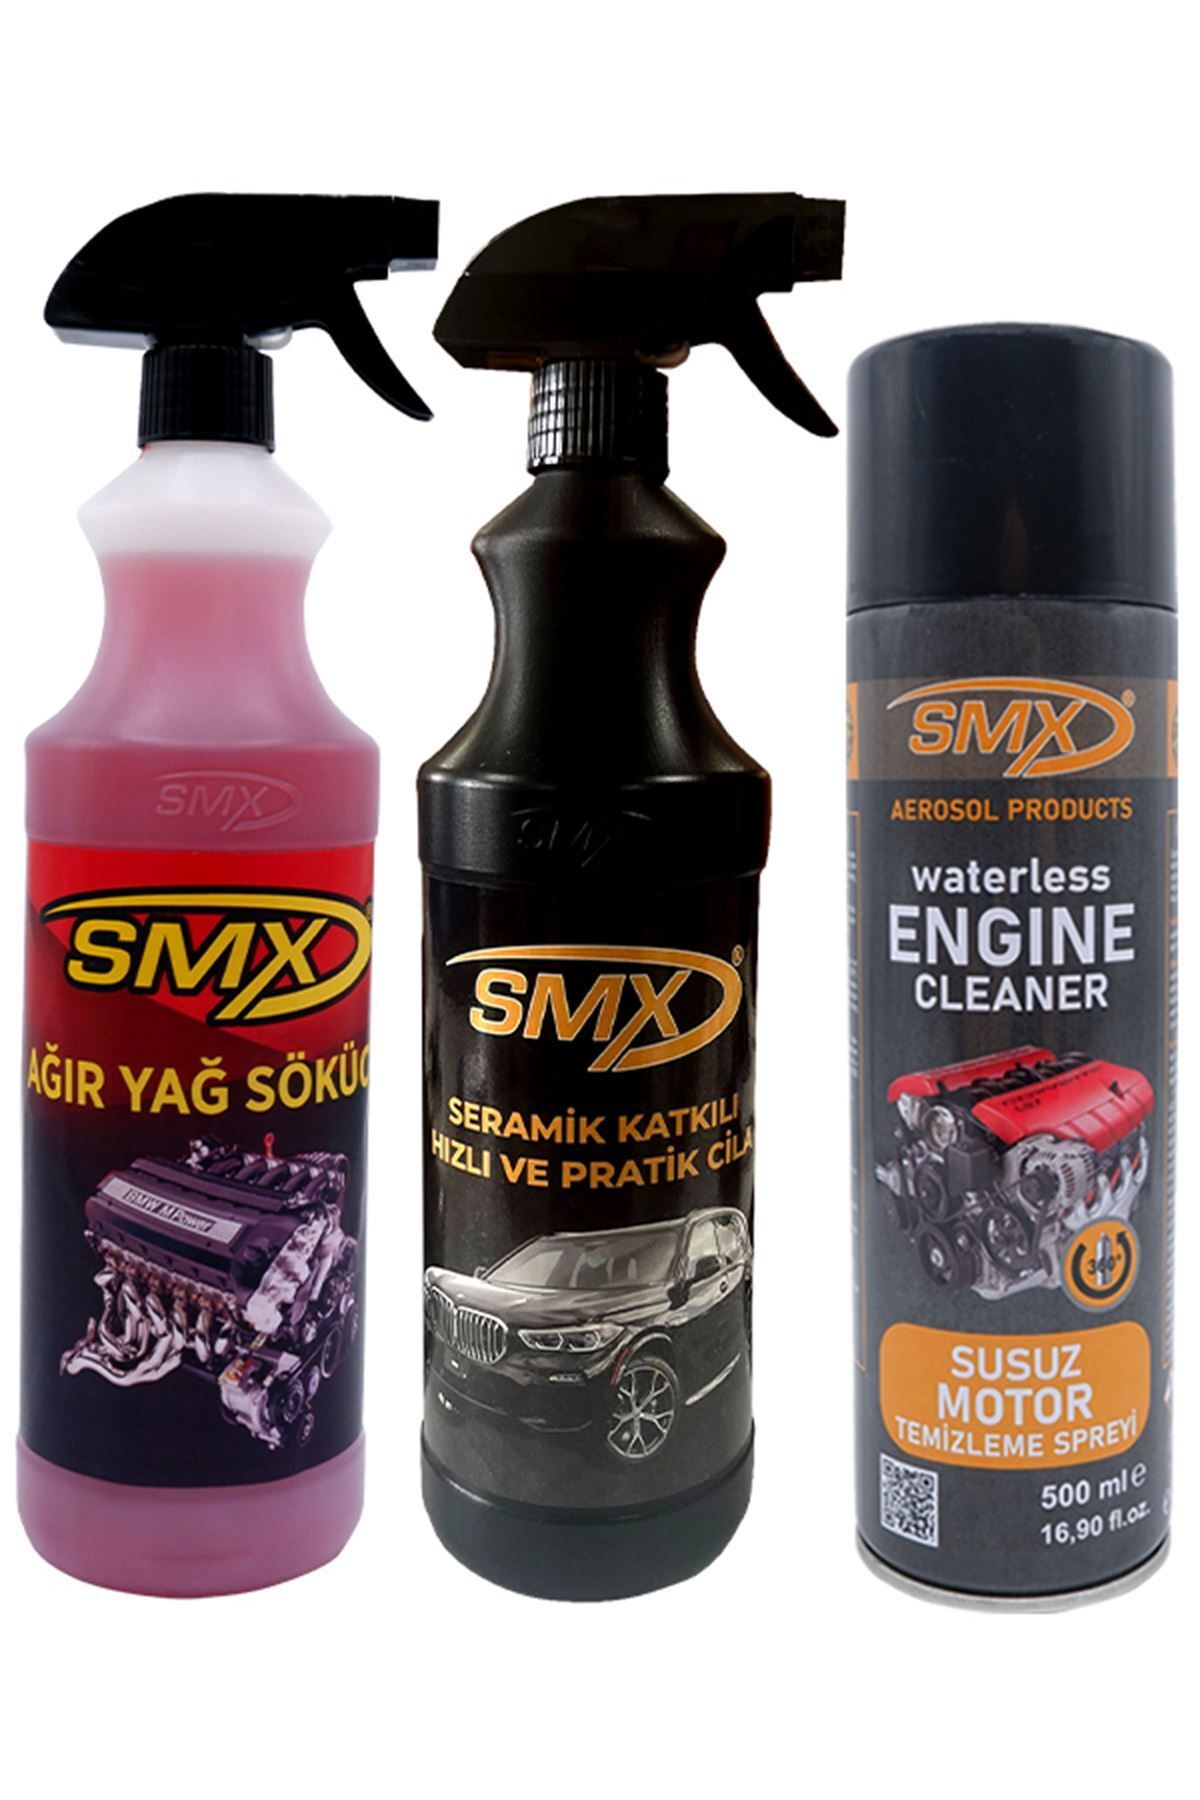 SMX Susuz Motor Temizleme Spreyi / Seramik Cila / Hızlı Cila / Pratik Cila / Ağır Yağ Sökücü